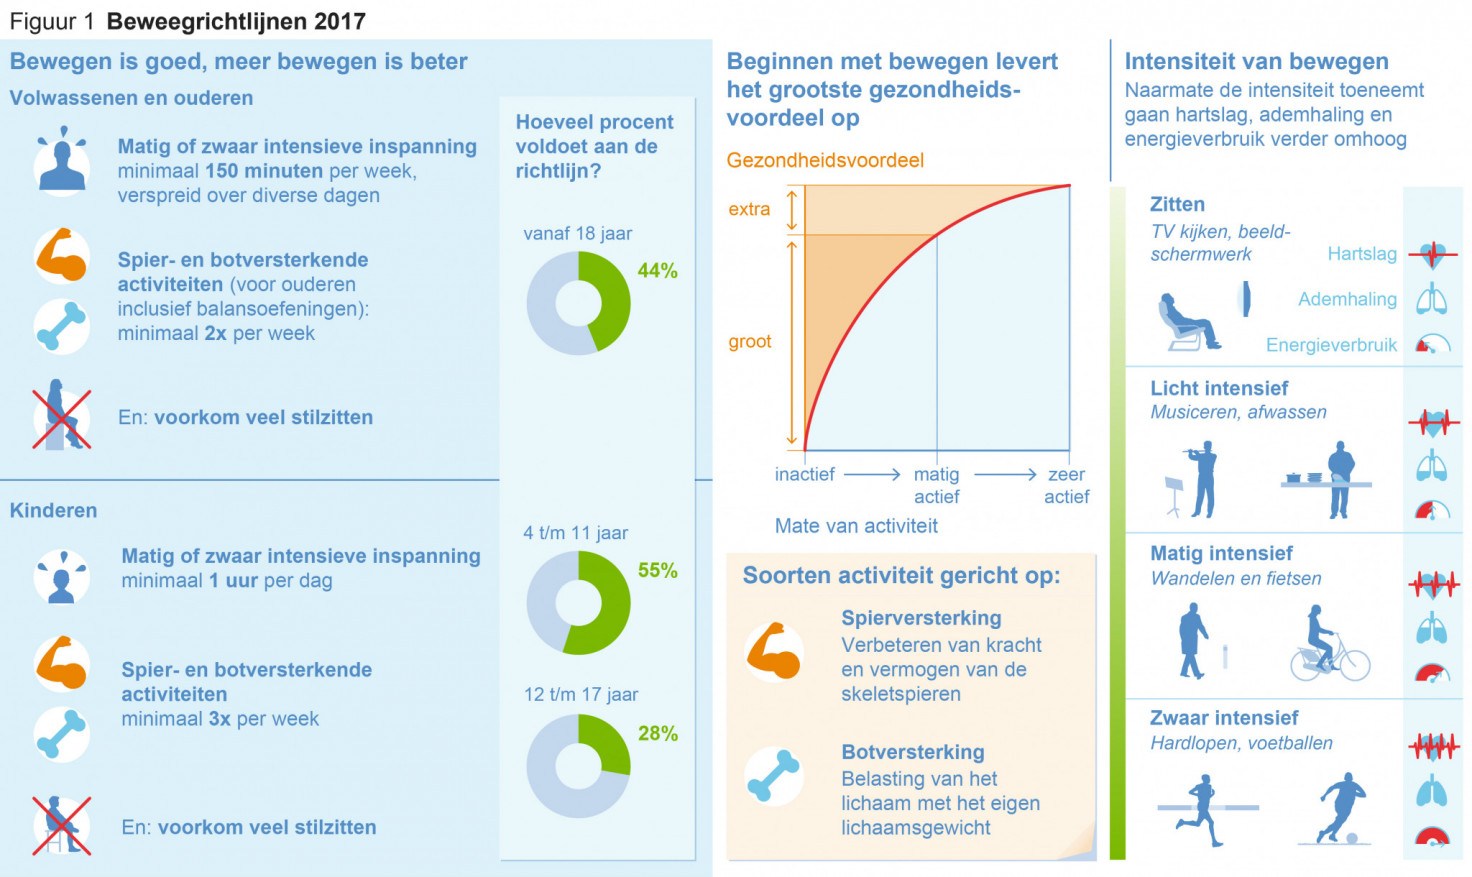 Afbeelding beweegrichtlijnen 2017. Bron:Gezondheidsraad Den Haag, publicatienummer 2017/08